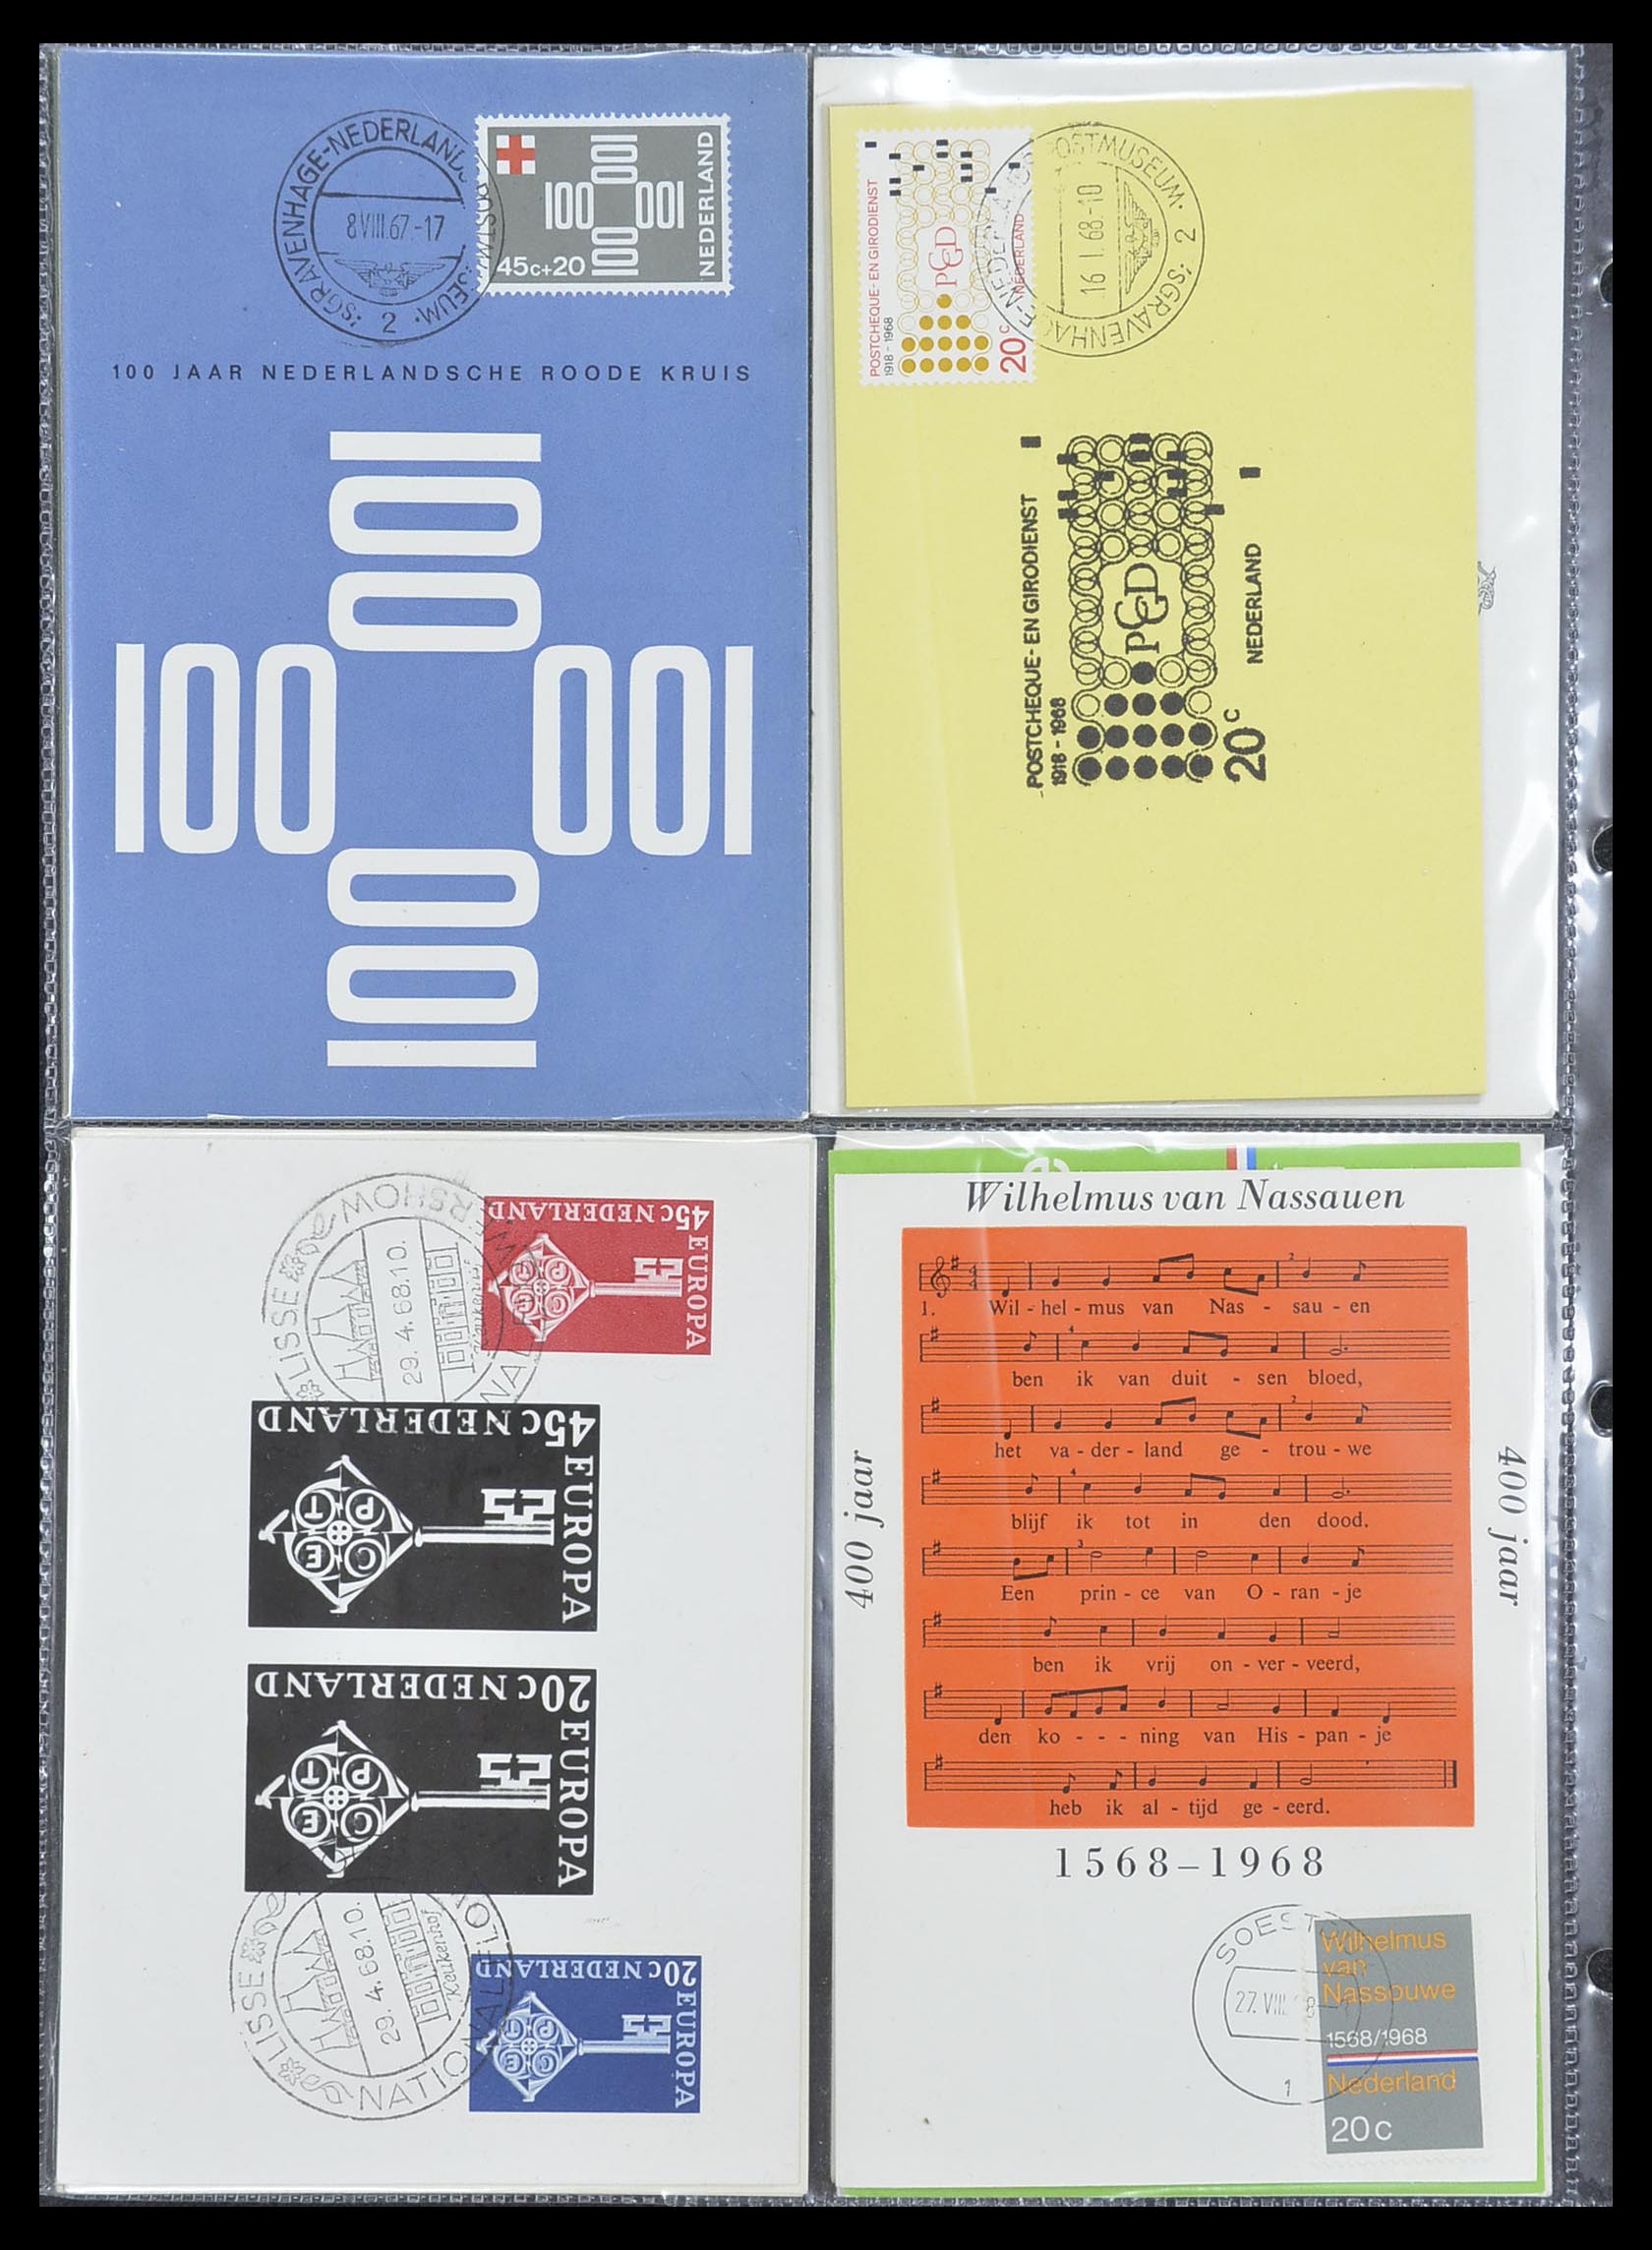 33531 037 - Postzegelverzameling 33531 Nederland maximumkaarten 1928(!)-2006.